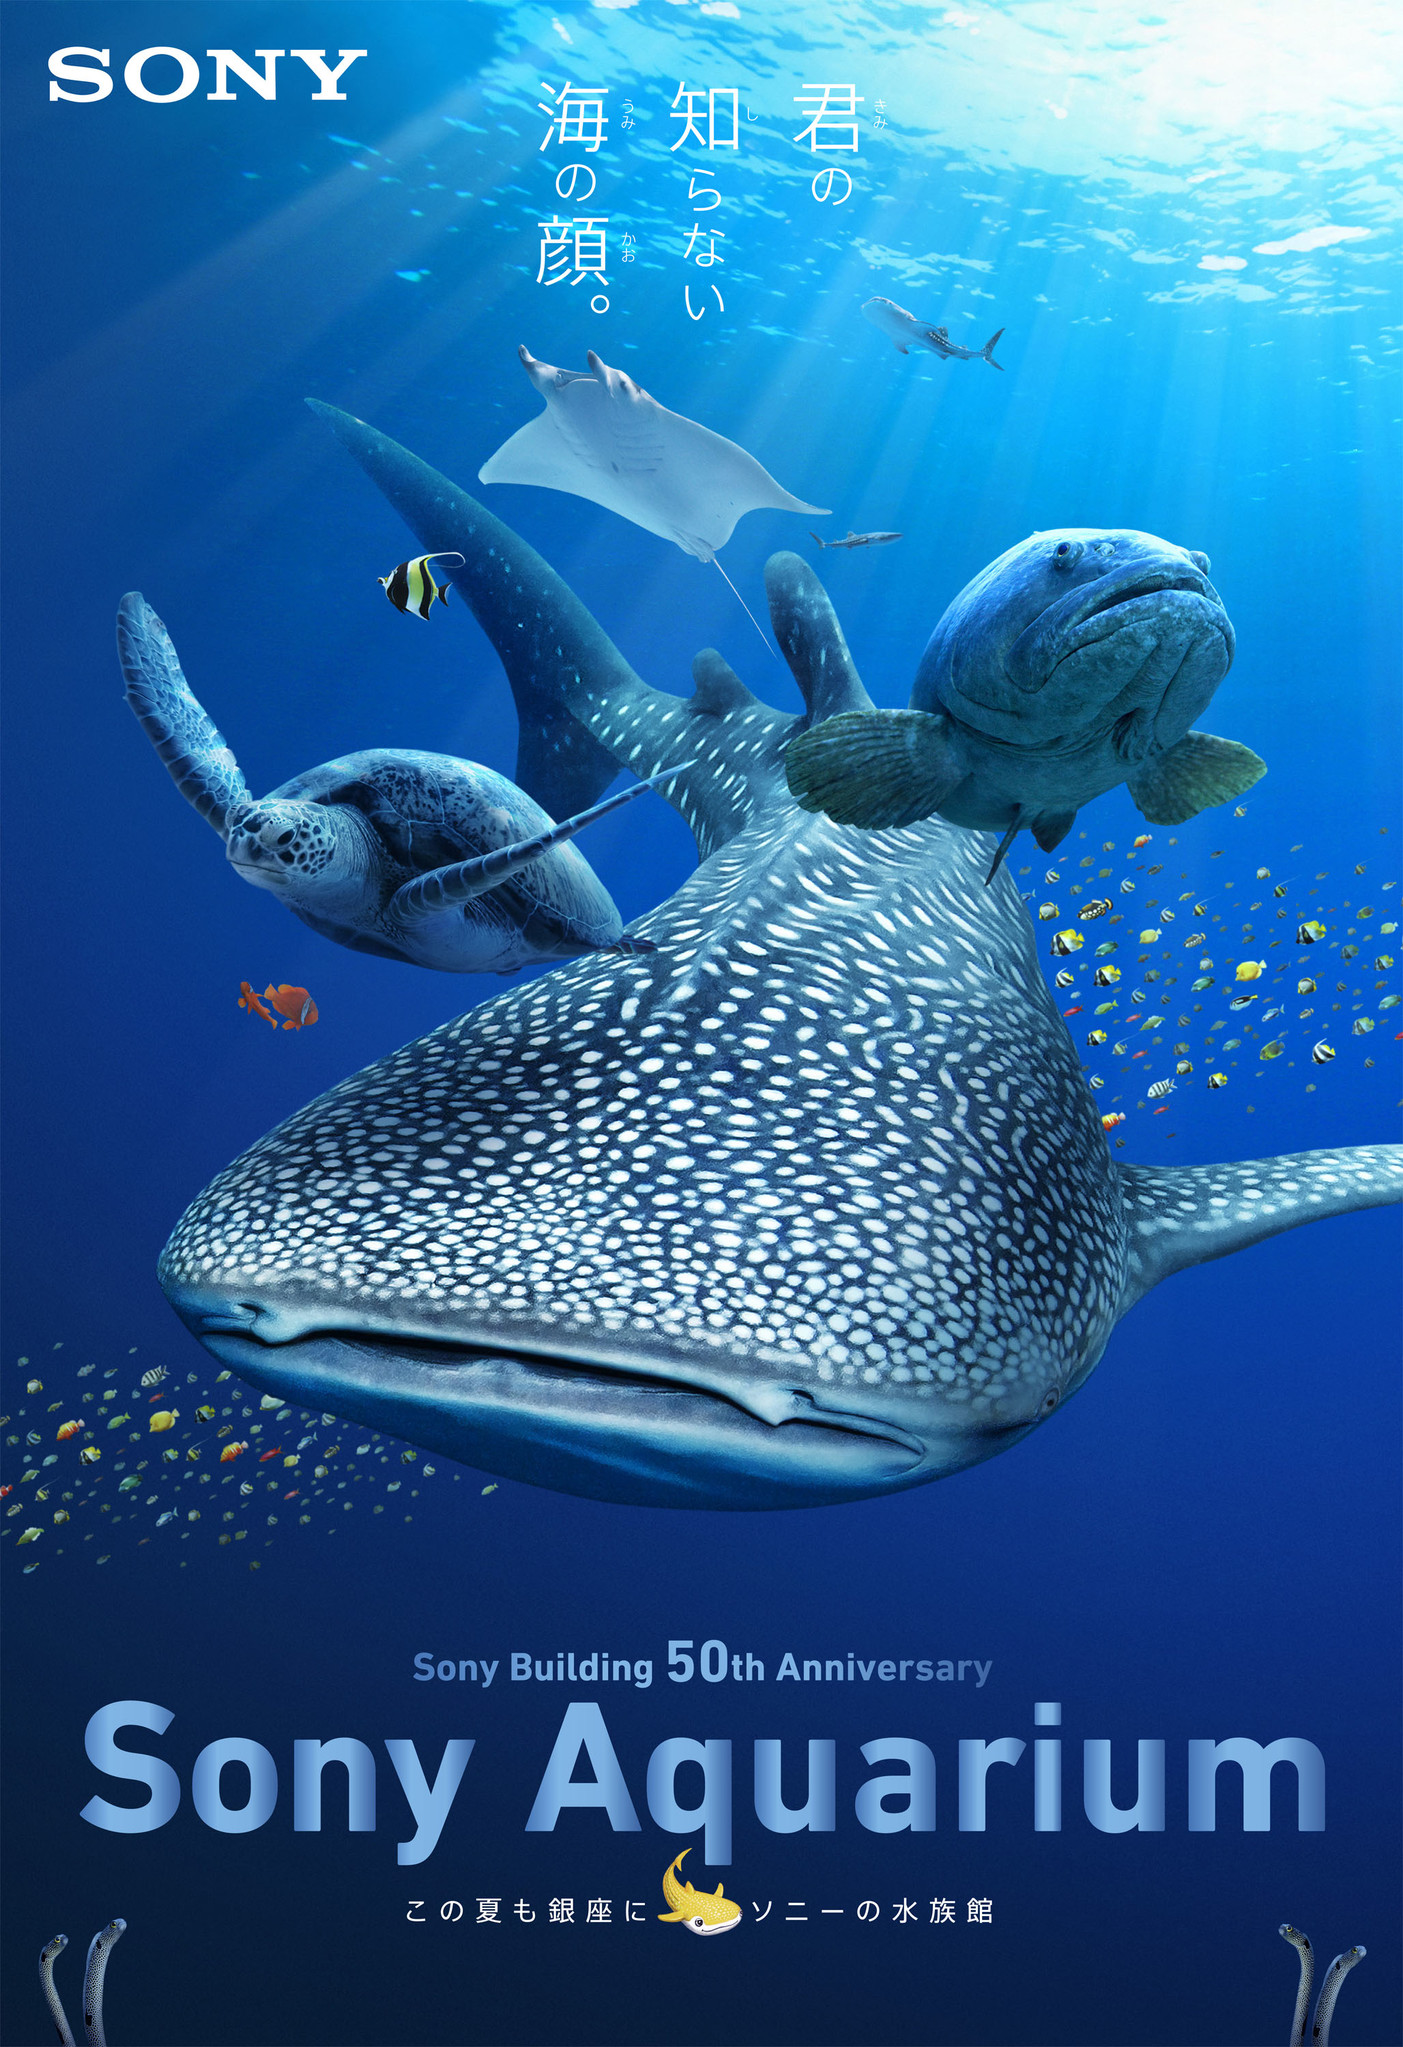 沖縄 美ら海 の魚たちが泳ぎ回る 銀座の夏の風物詩 Sony Building 50th Anniversary Sony Aquarium 開催 この夏も銀座にソニーの水族館 ソニー企業株式会社のプレスリリース